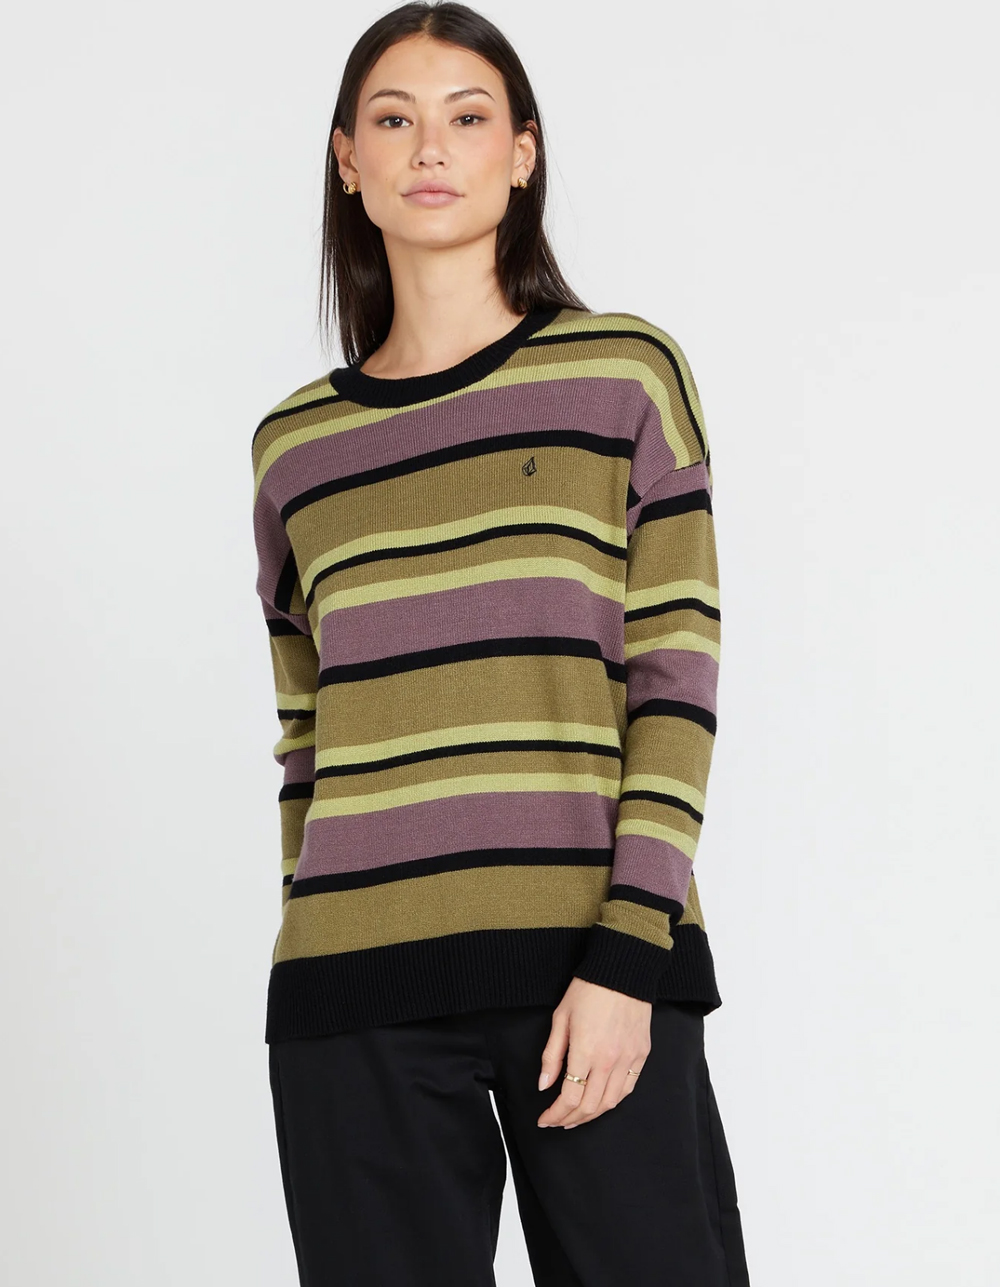 VOLCOM Dede Lovelace Womens Stripe Sweater